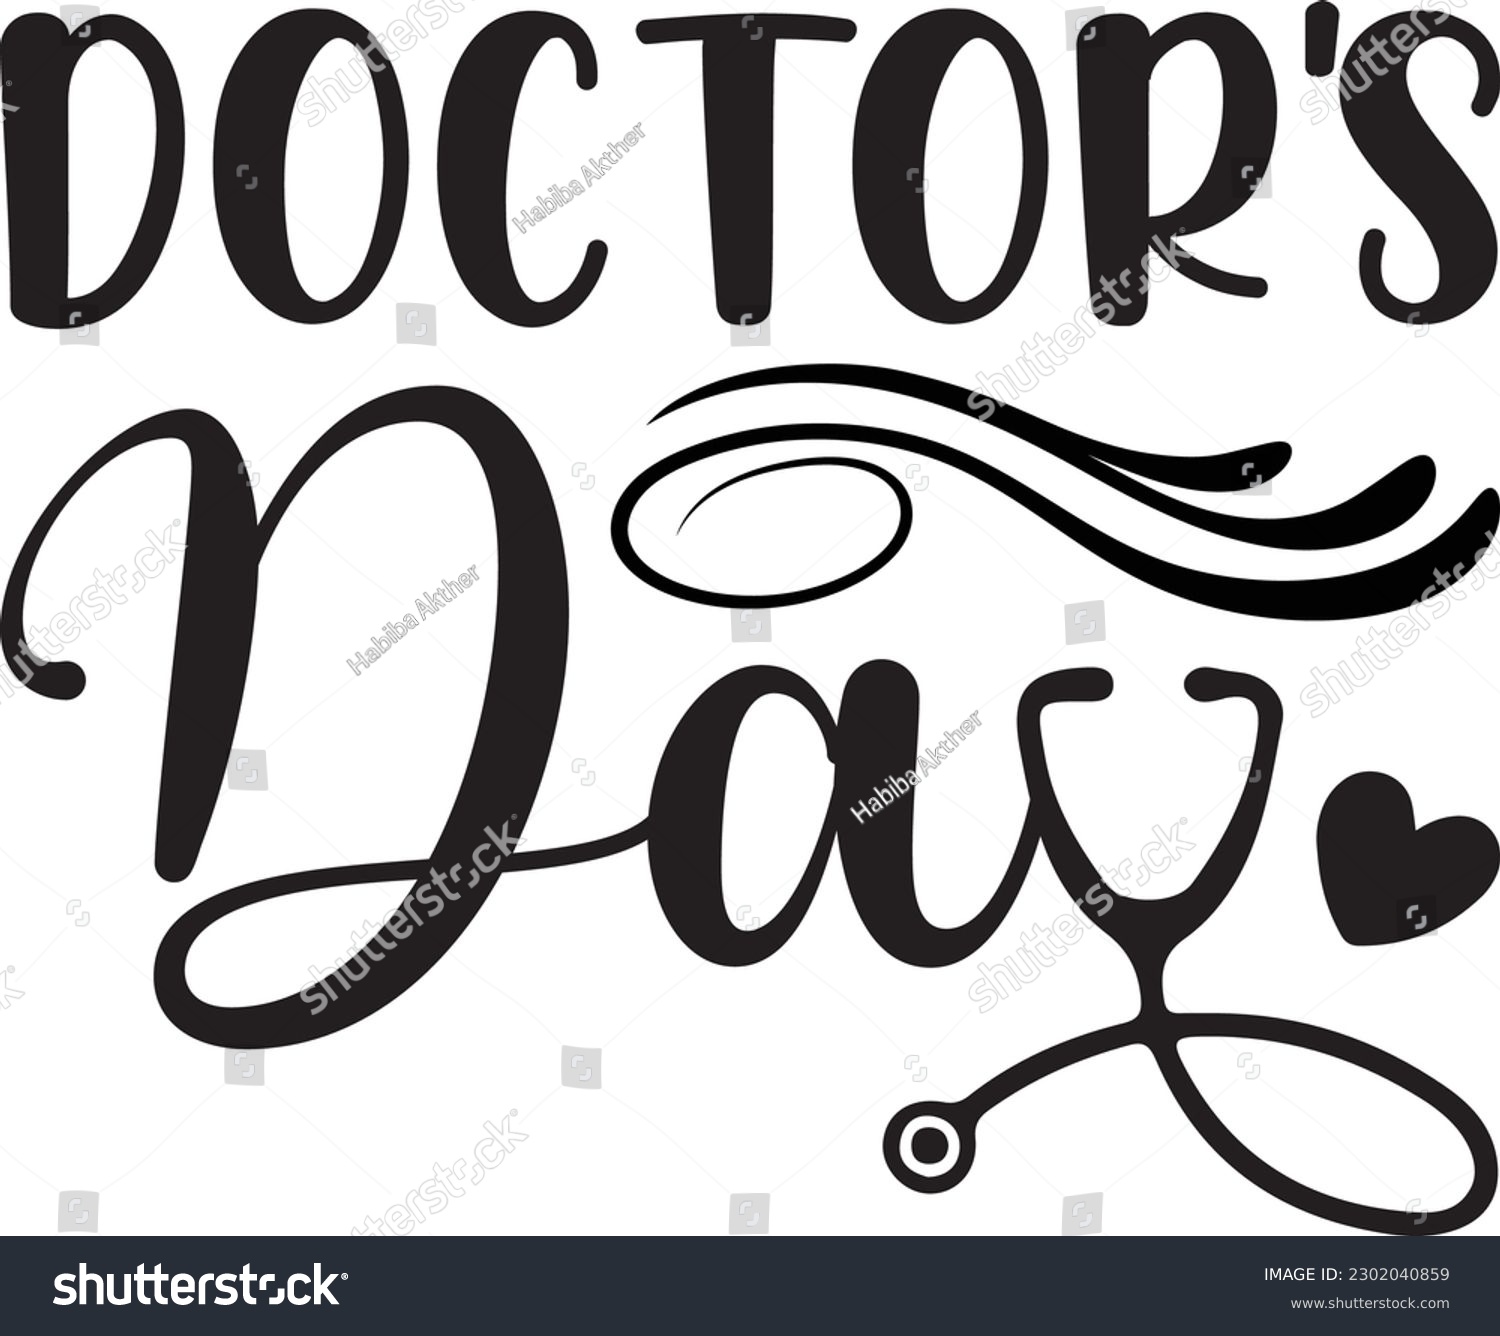 SVG of Doctor's Day,#1 doctor,Doctor Svg,silhouette,Vector,Nurse SVG,Essential Worker,Hospital,Heart Stethoscope SVG,dentist svg,monogram svg,medical,Eps,uniform svg,Doctor Jacket svg,Doctor mug,Coffee Cup, svg